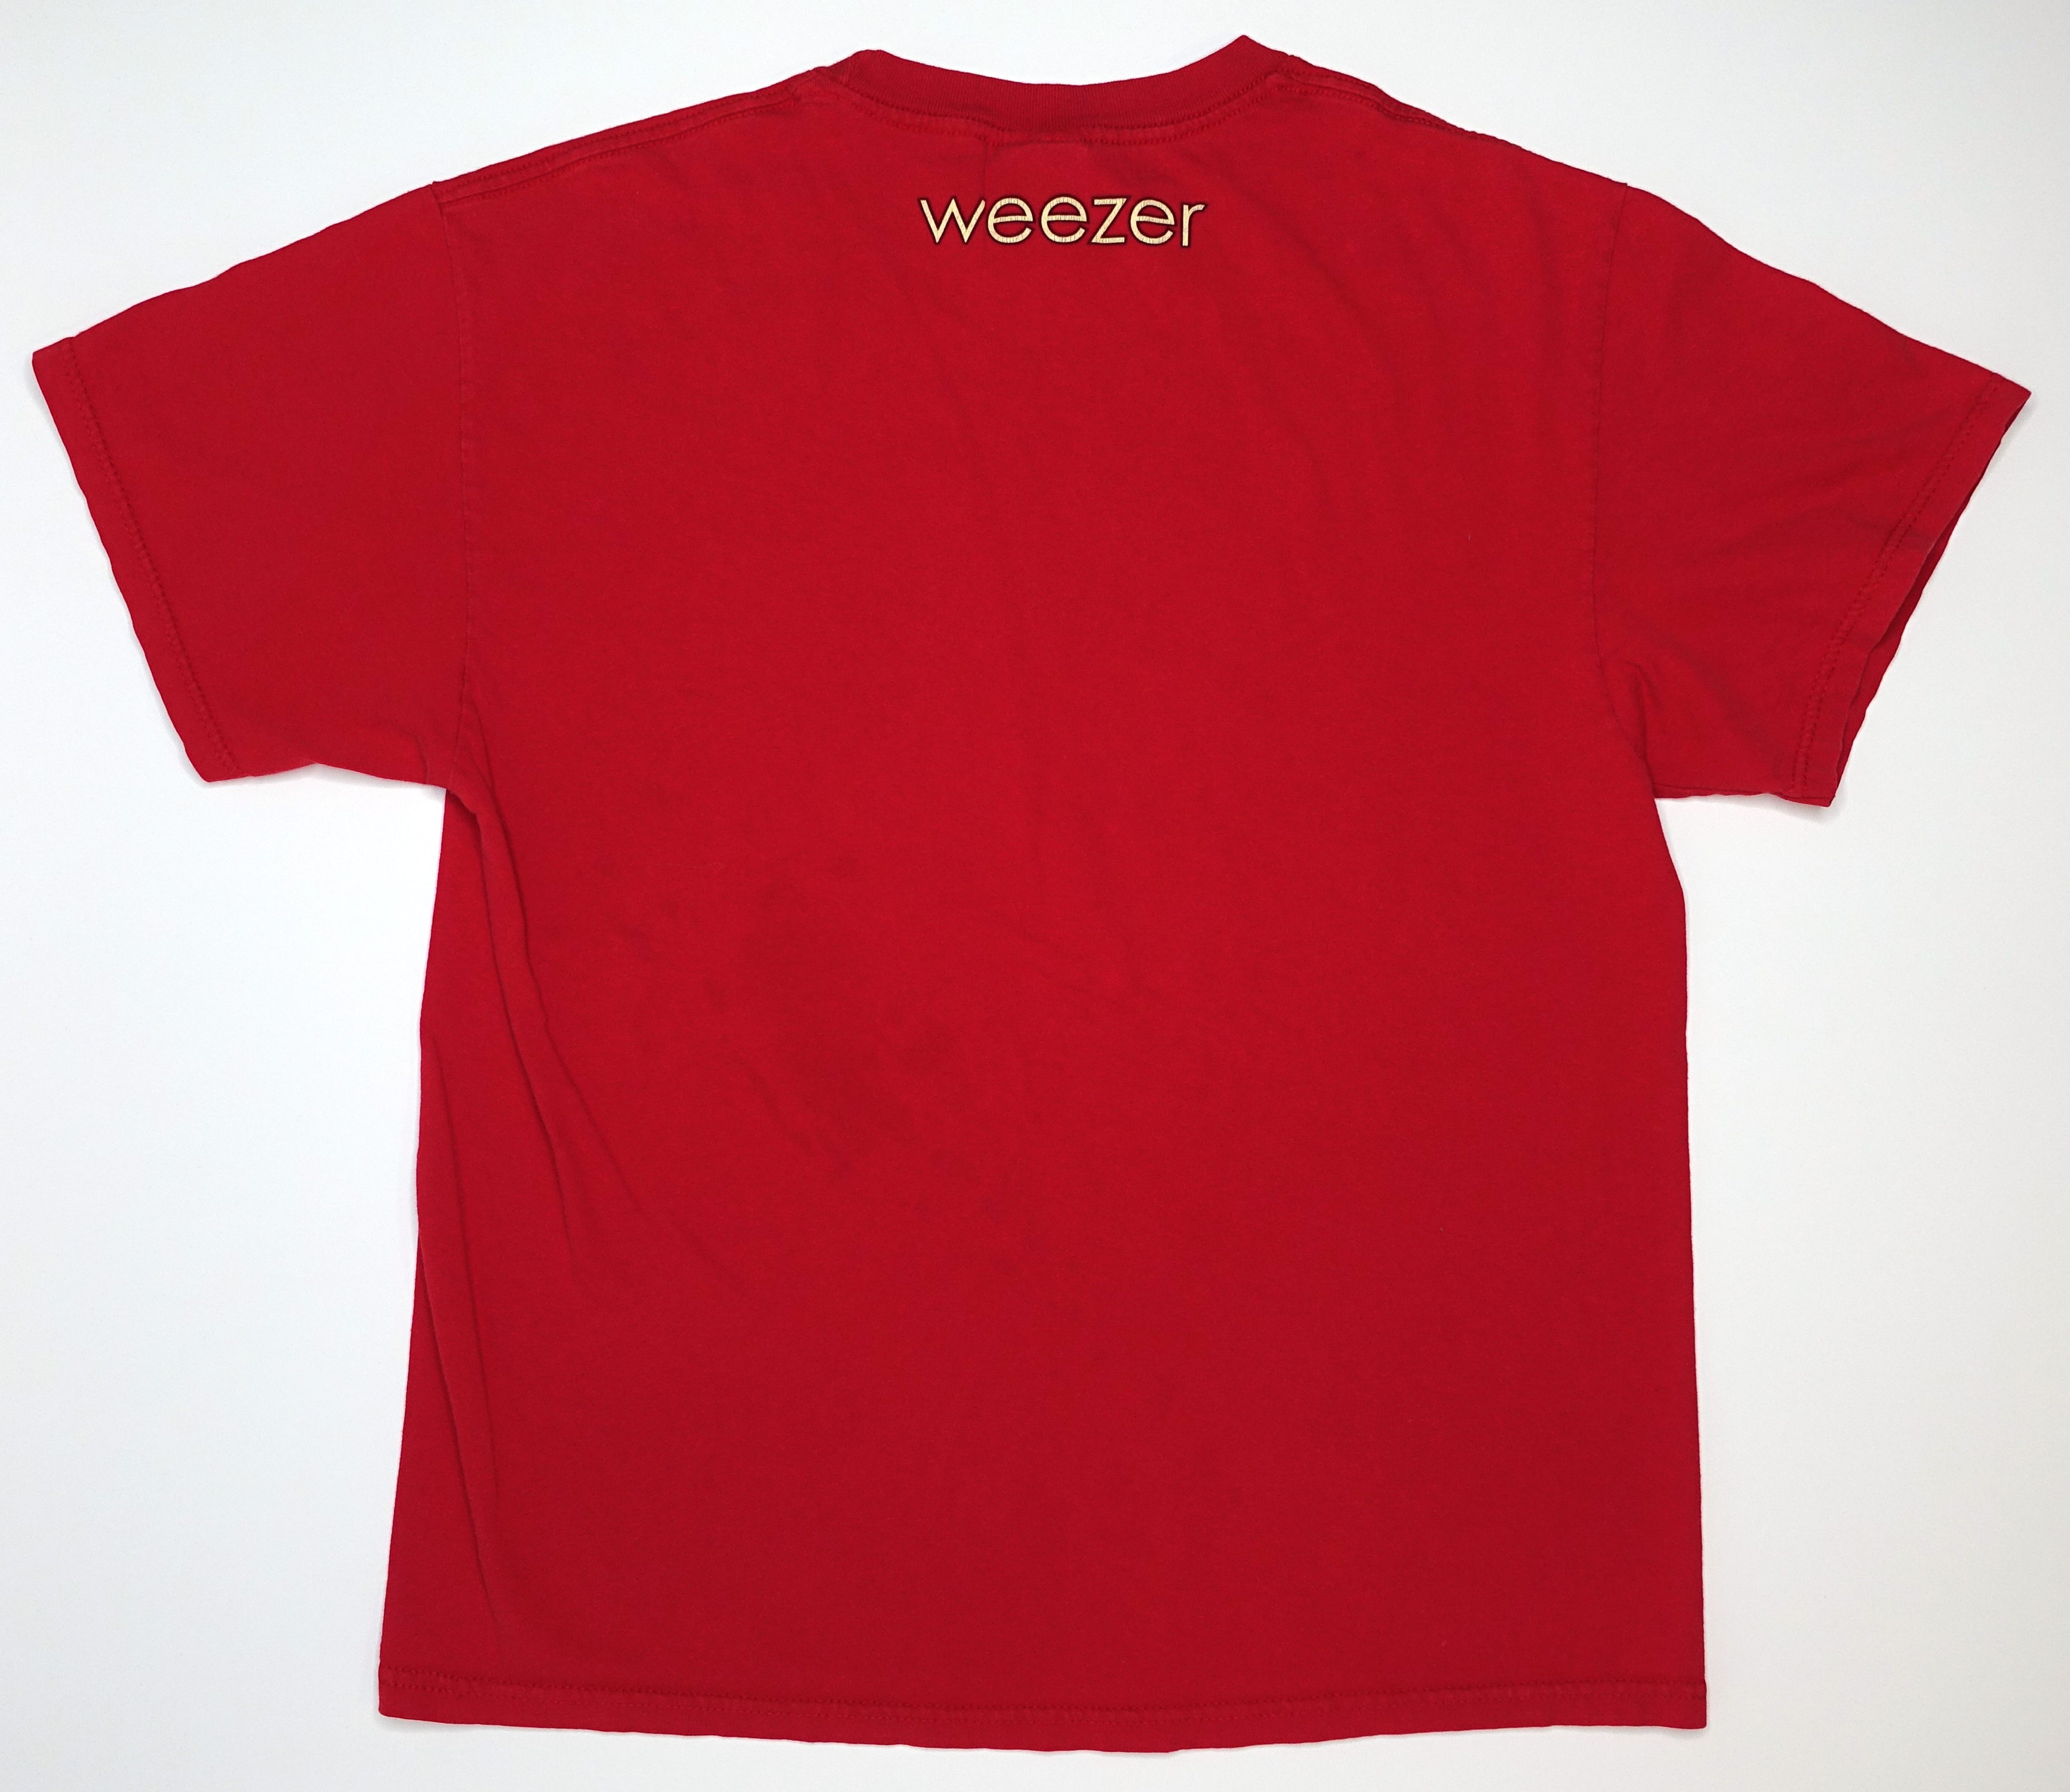 Weezer - Cartoon Asian Kids Red Album 2008 Tour Shirt Size Large